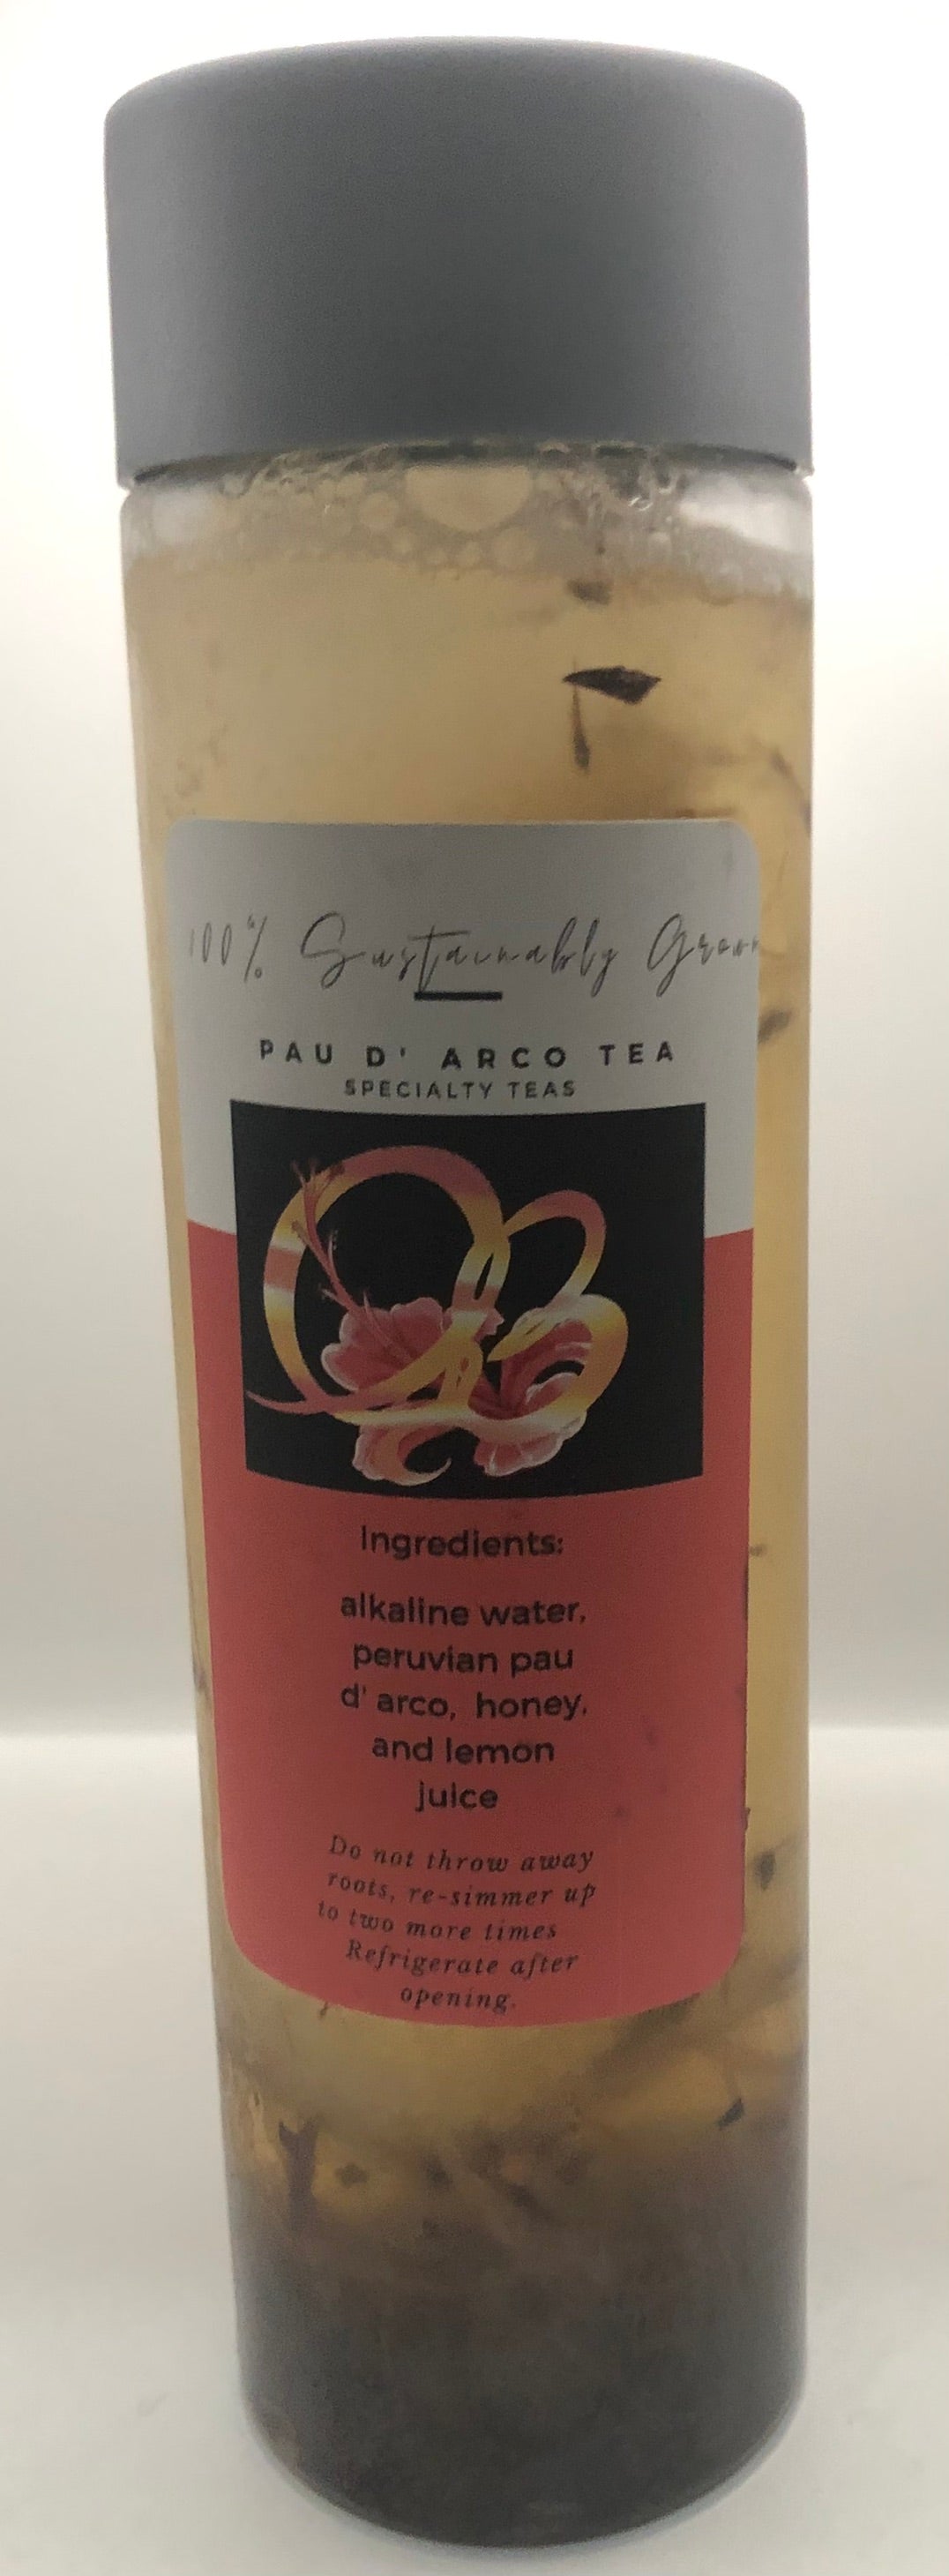 Pau D' Arco Tea